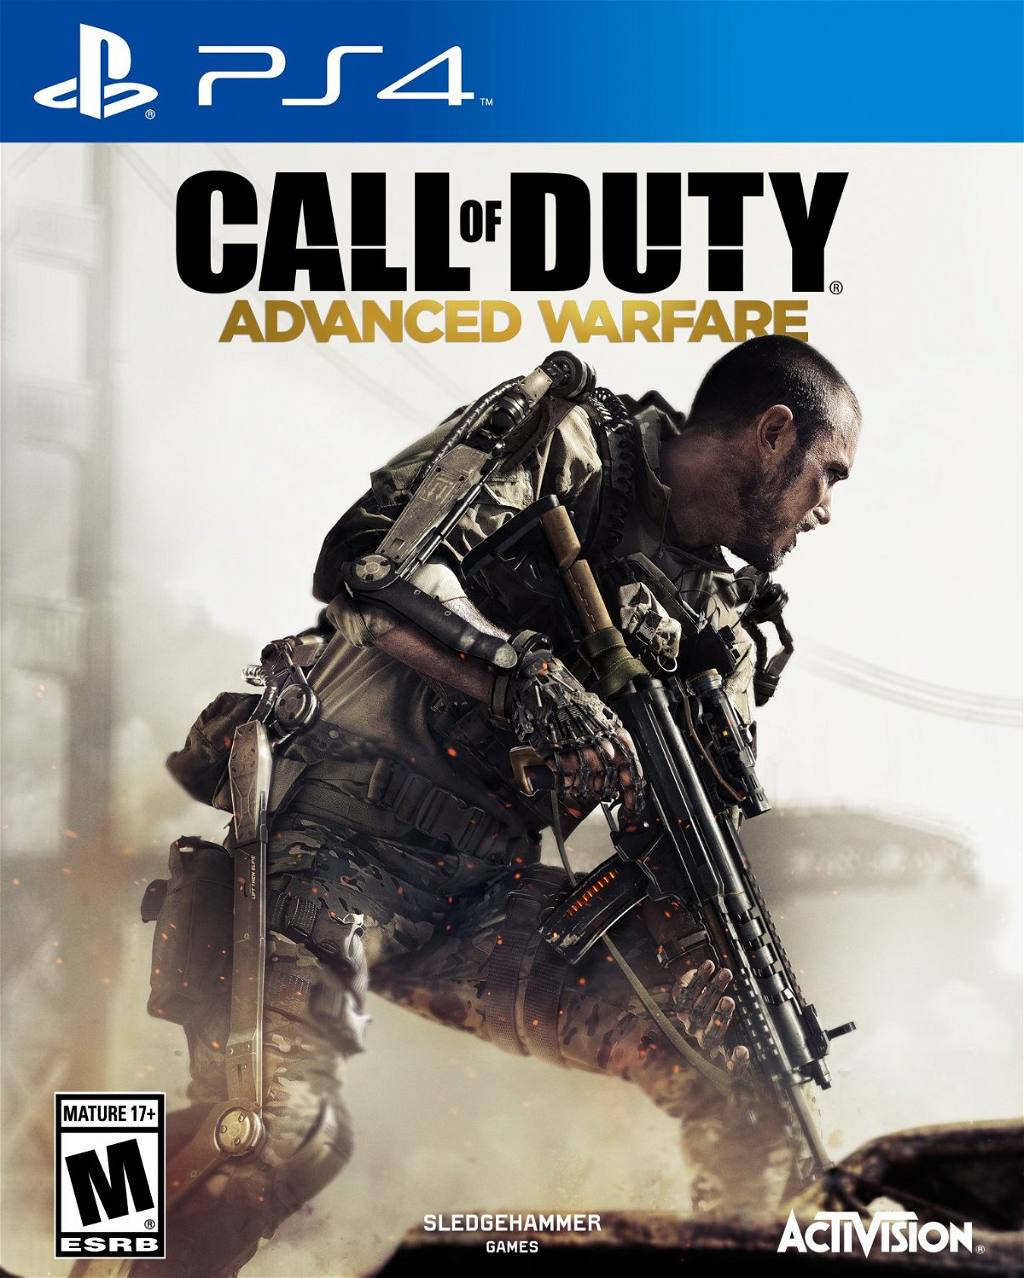 of Duty: Advanced Warfare for PlayStation 4